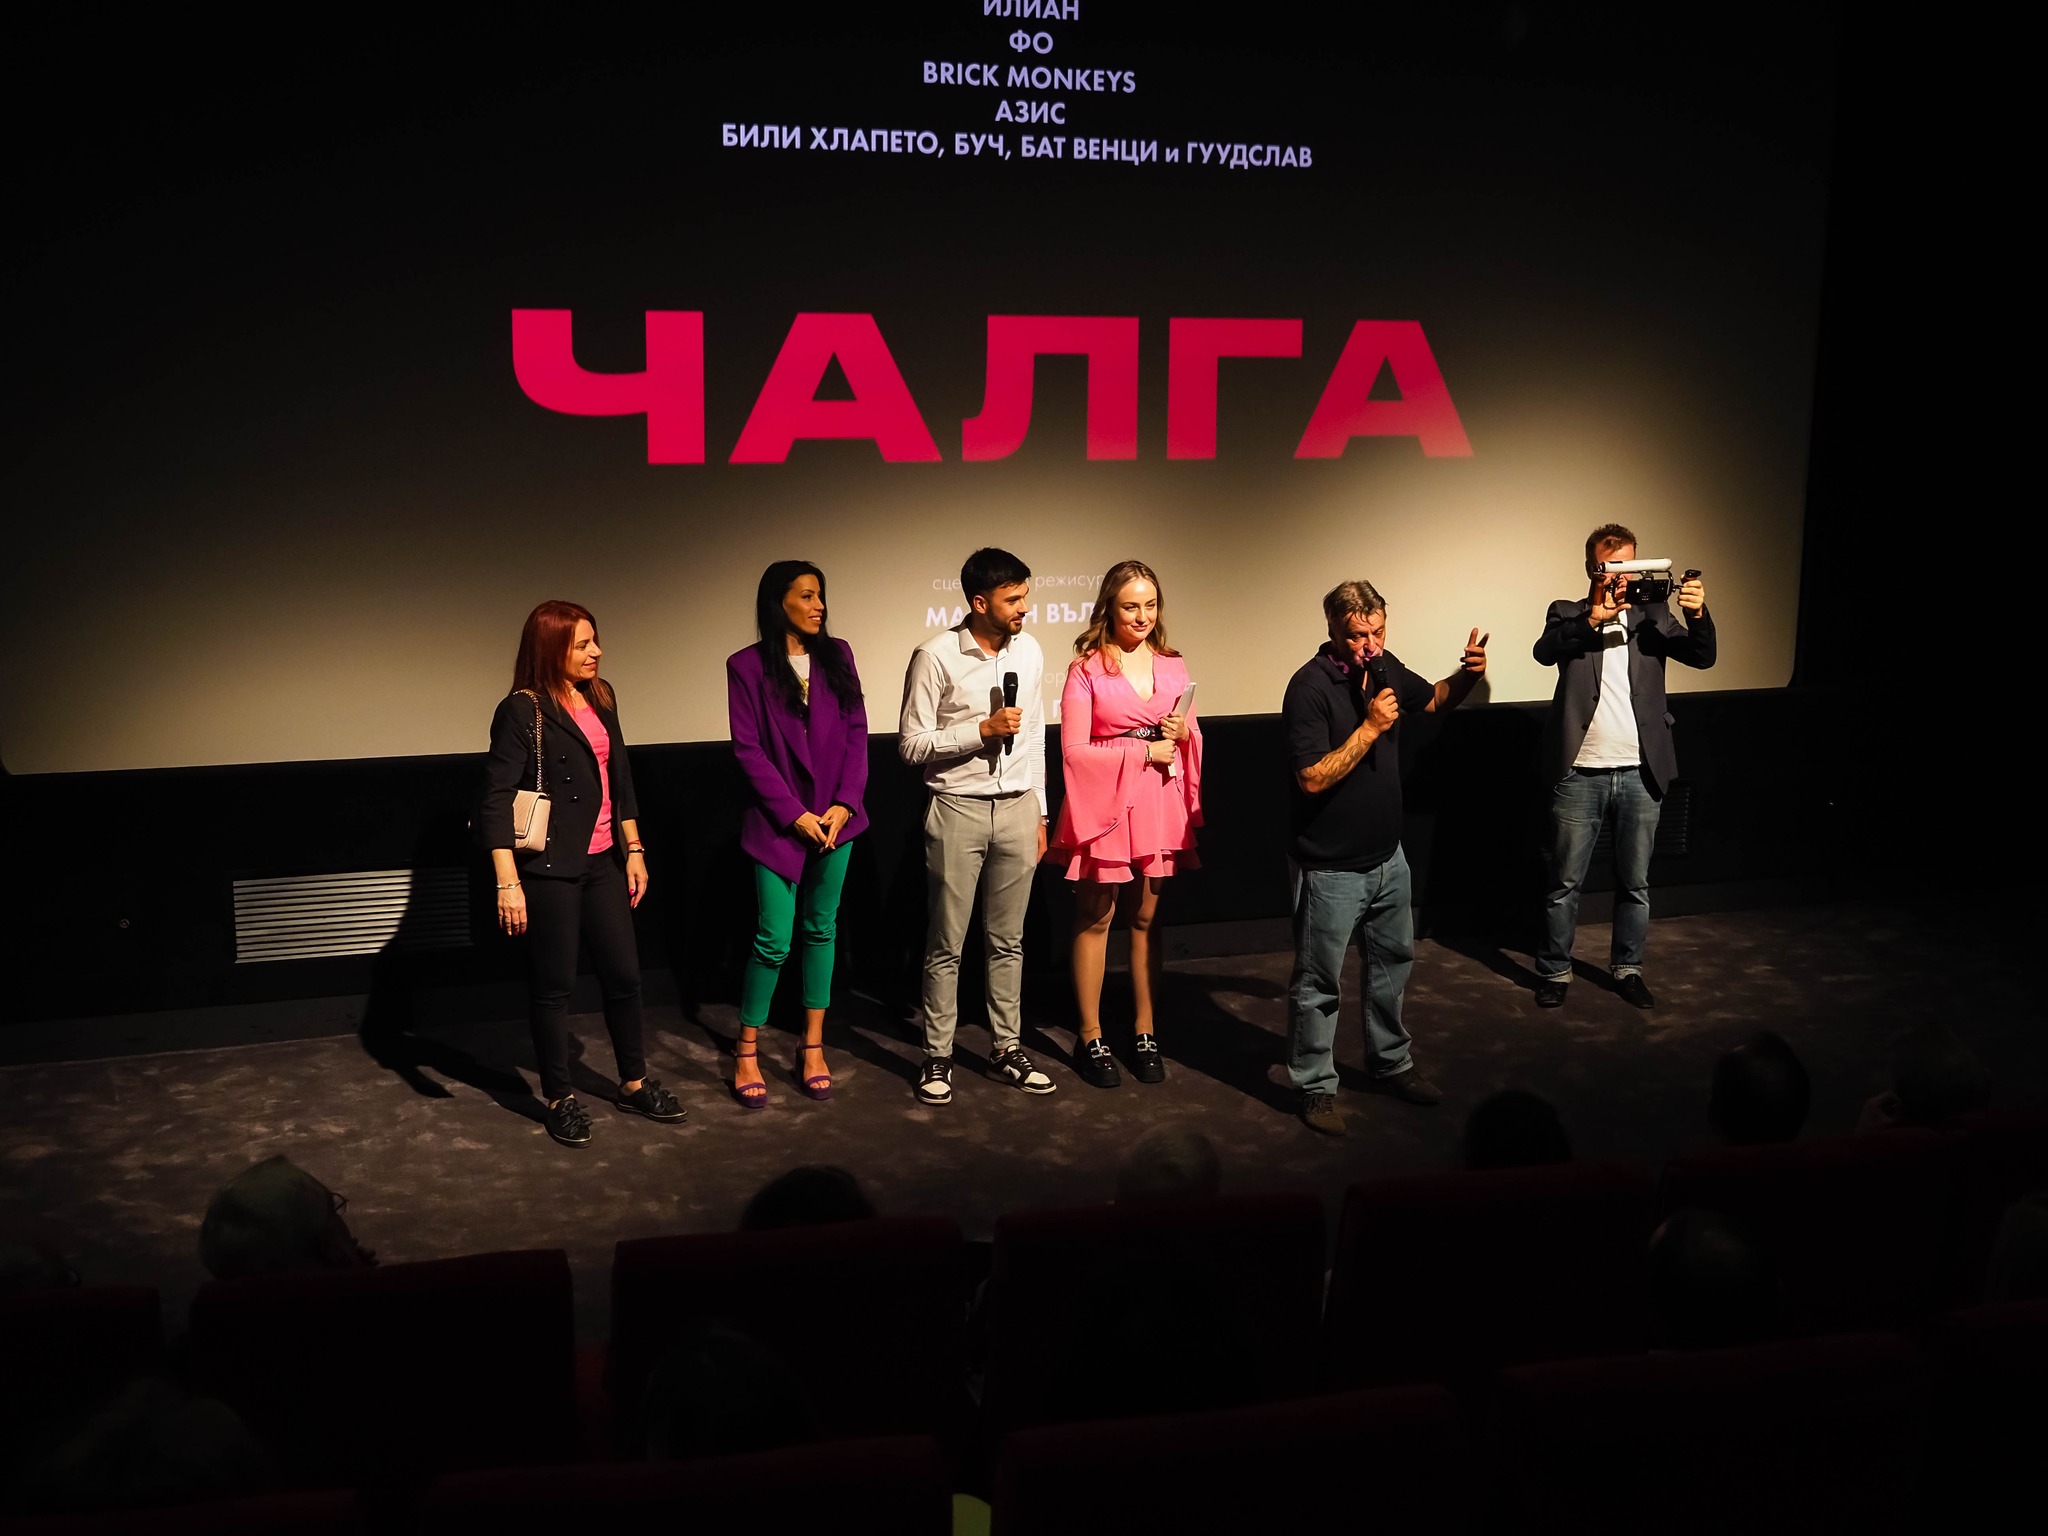 В Рим се проведе Фестивал на българското кино